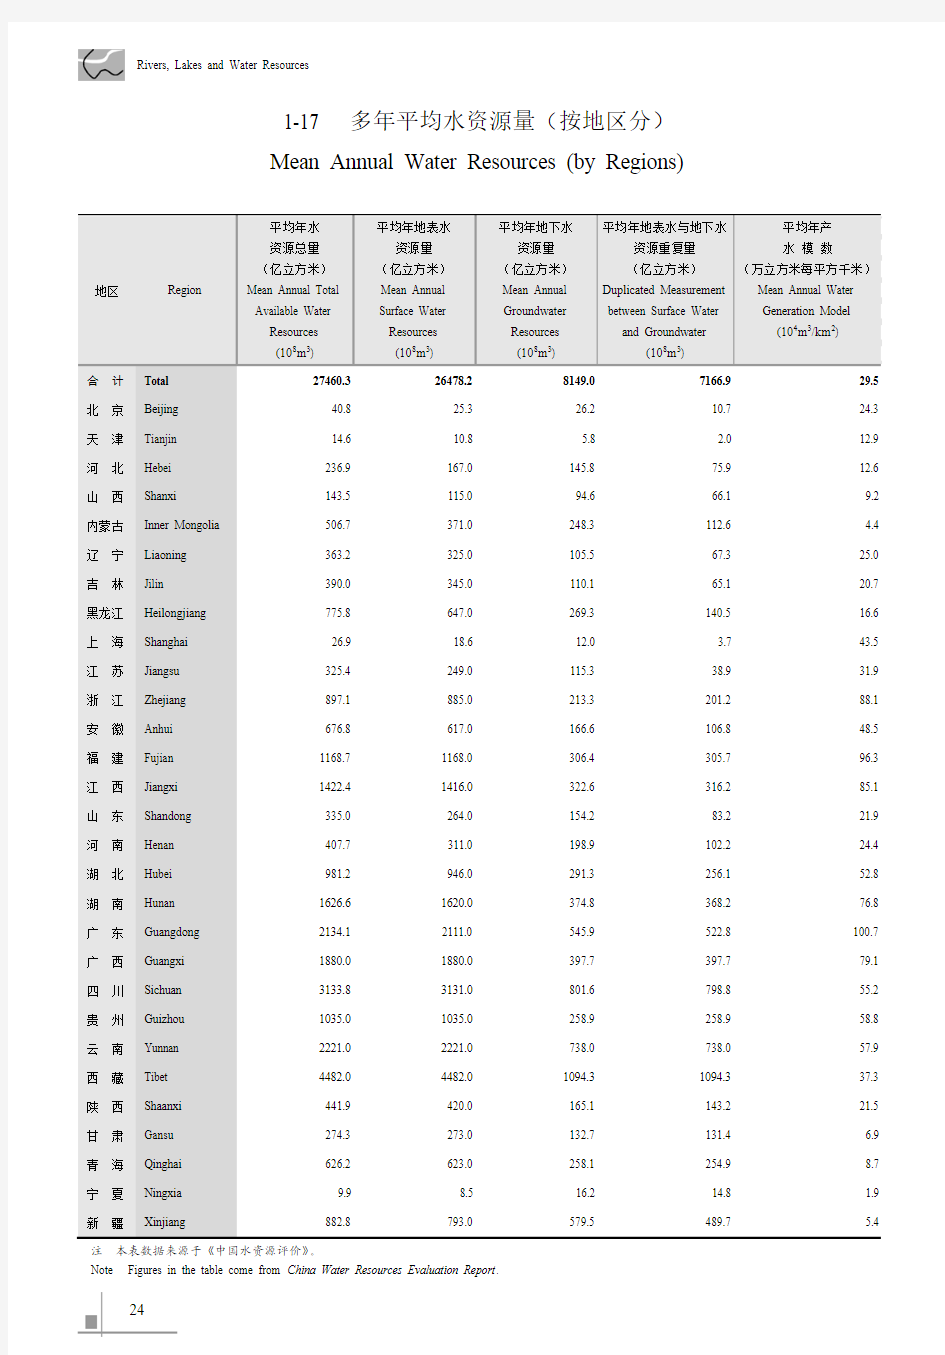 中国水利统计年鉴2011_1-17多年平均水资源量(按地区分)_